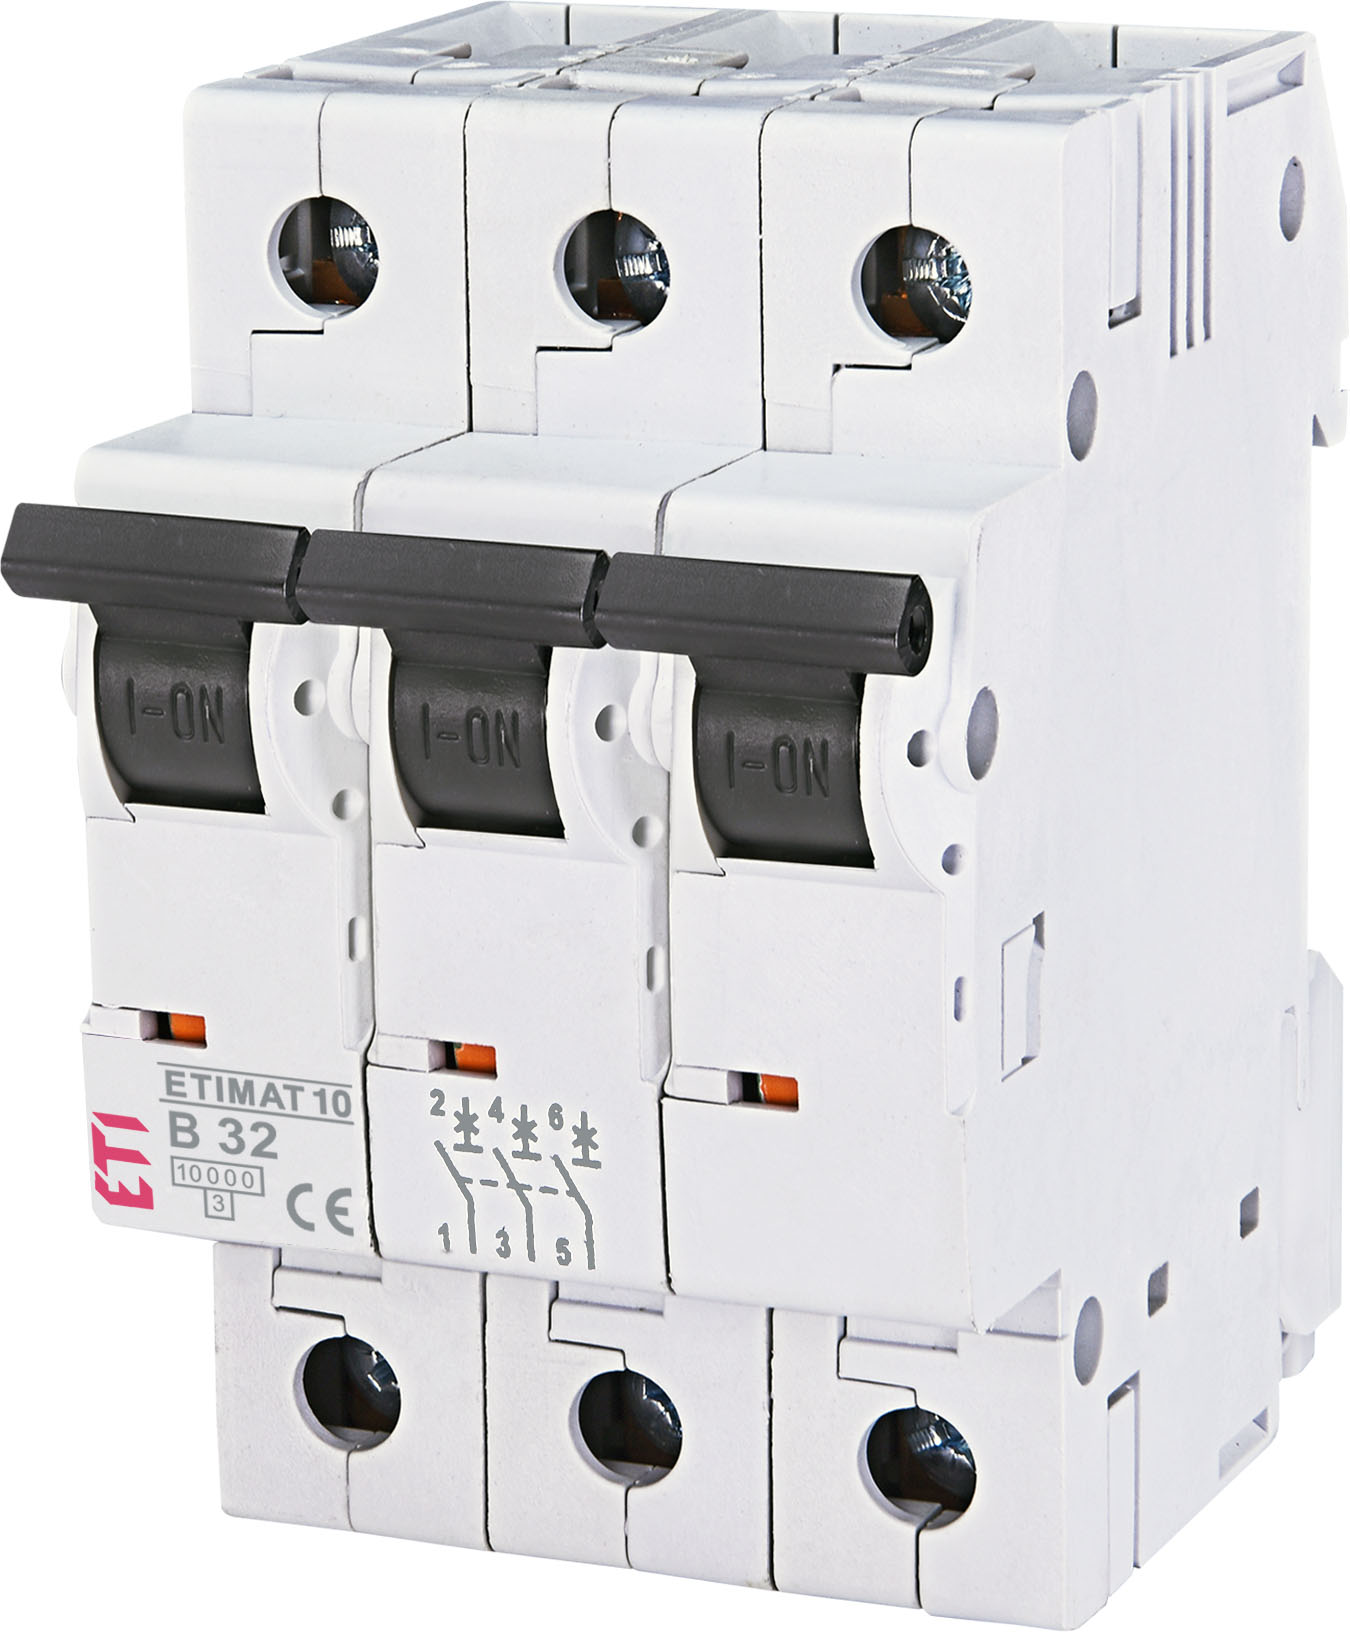 Автоматический выключатель ETI ETIMAT 10 3p B32 (002125719)